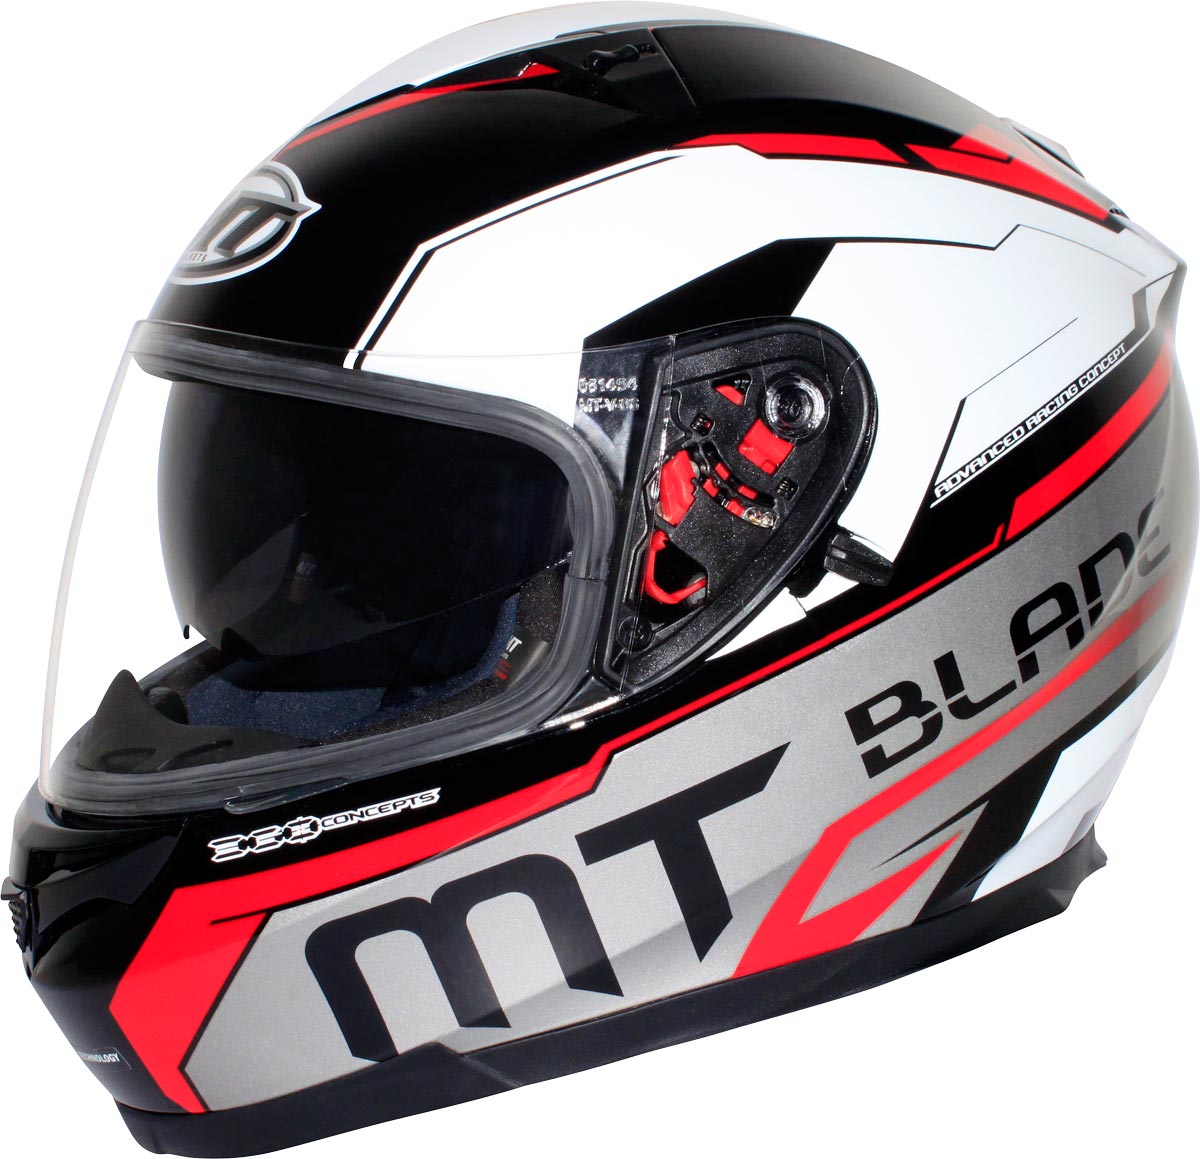 MT Helmets produit des casques en Polycarbonate comme ce Blade SV